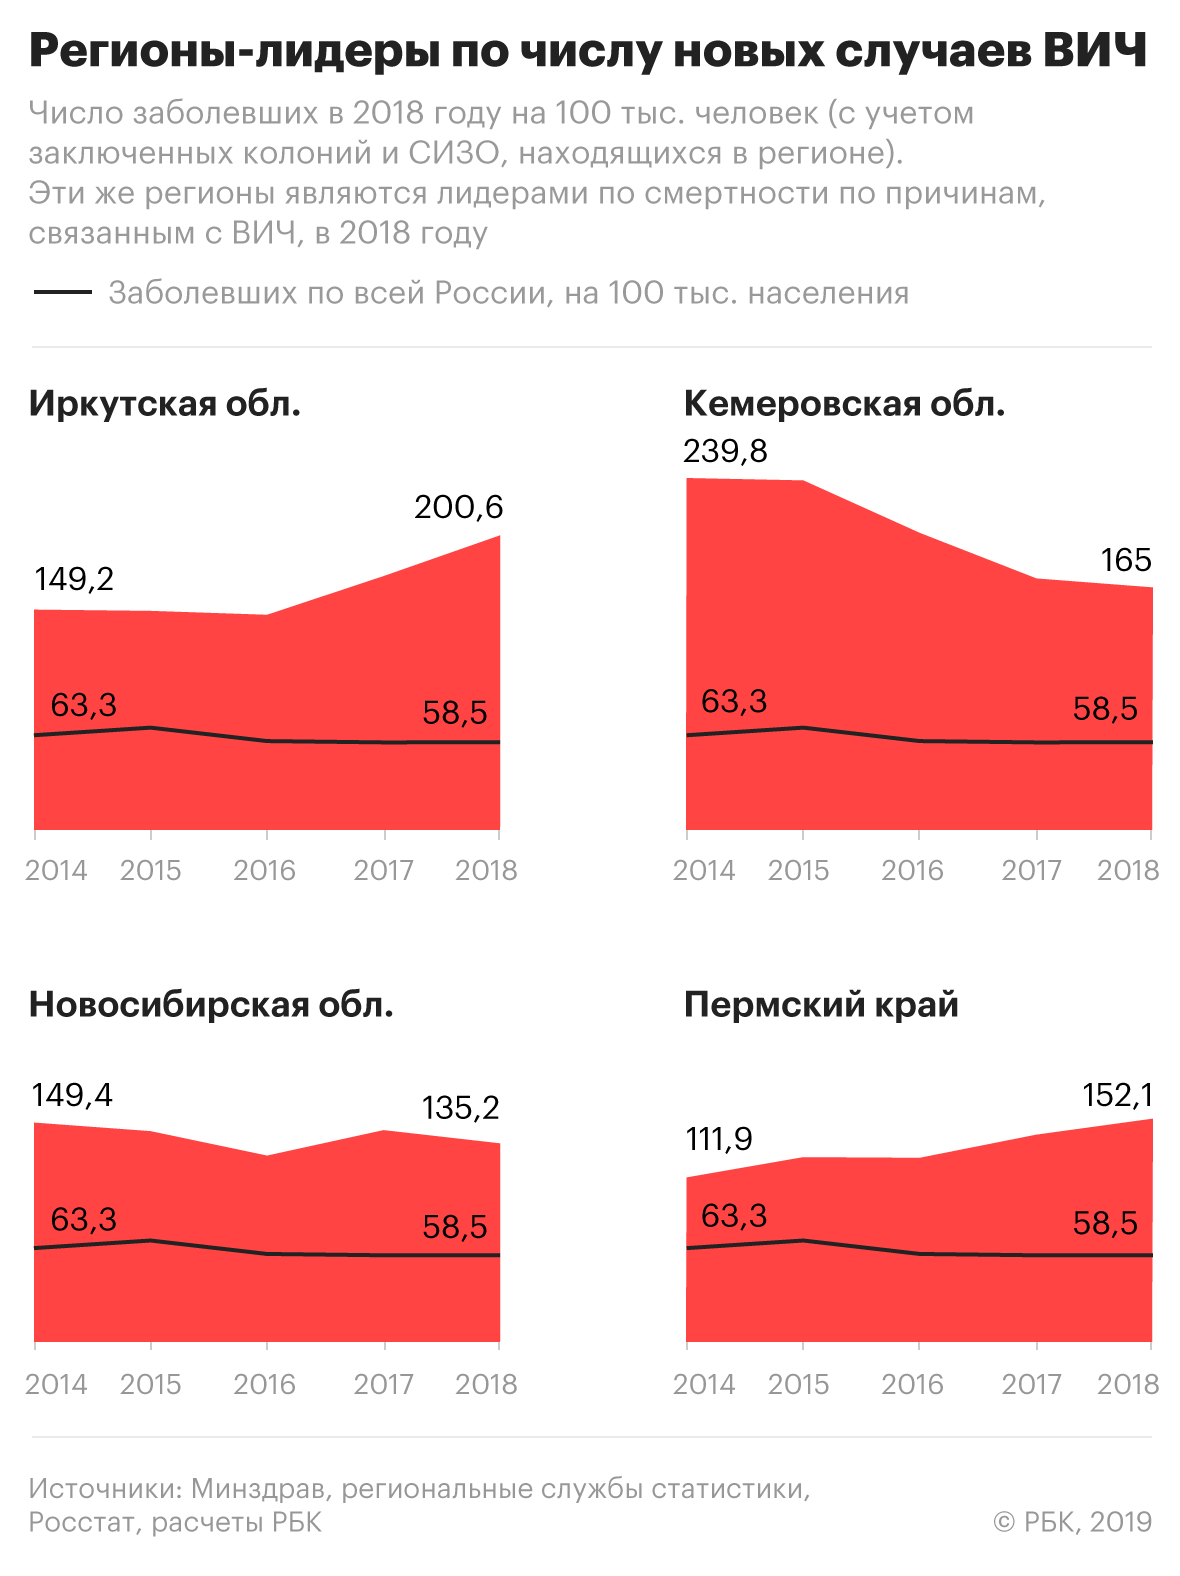 Большинство заболевших ВИЧ россиян оказались жителями Сибири и Урала